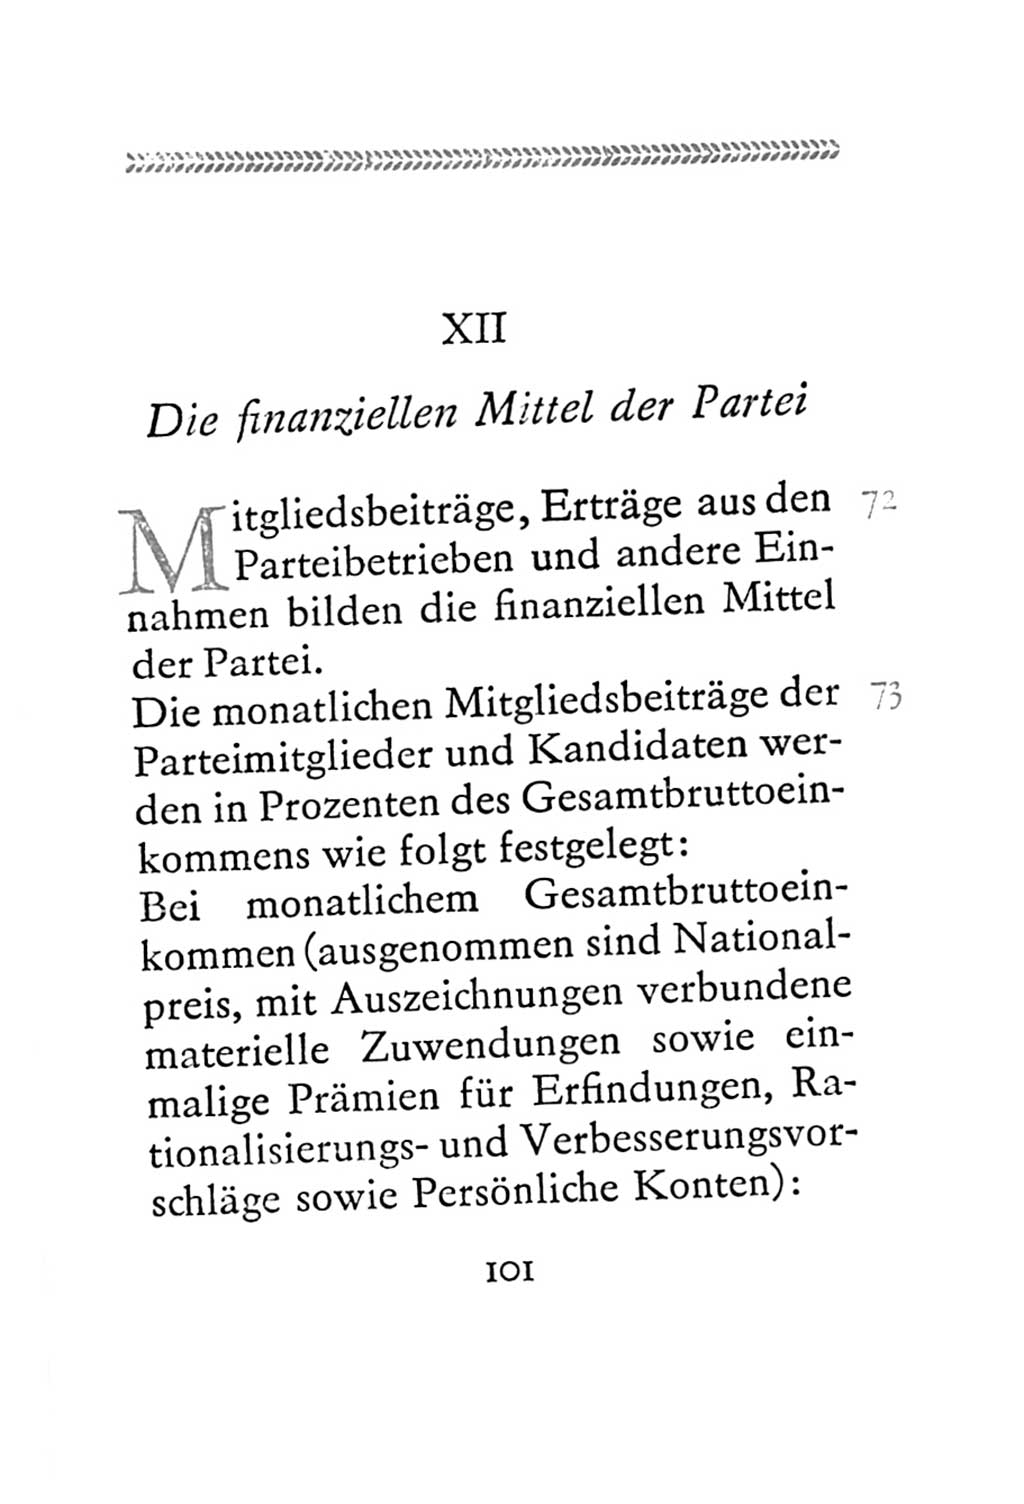 Statut der Sozialistischen Einheitspartei Deutschlands (SED) 1967, Seite 101 (St. SED DDR 1967, S. 101)